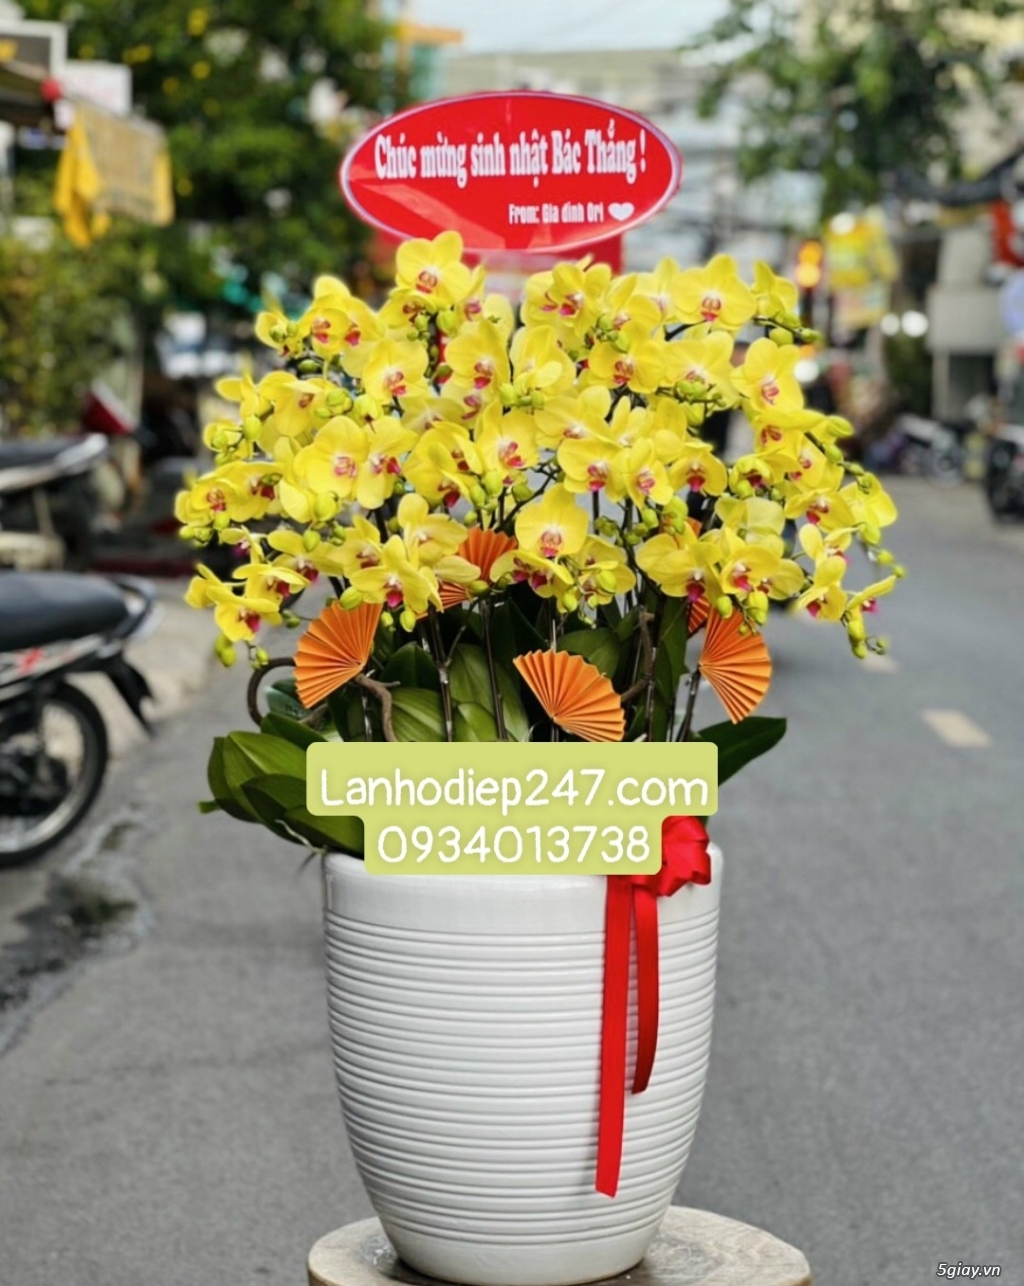 Shop hoa tươi lan hồ điệp 247 tại Gò Vấp 0934013738 - 12